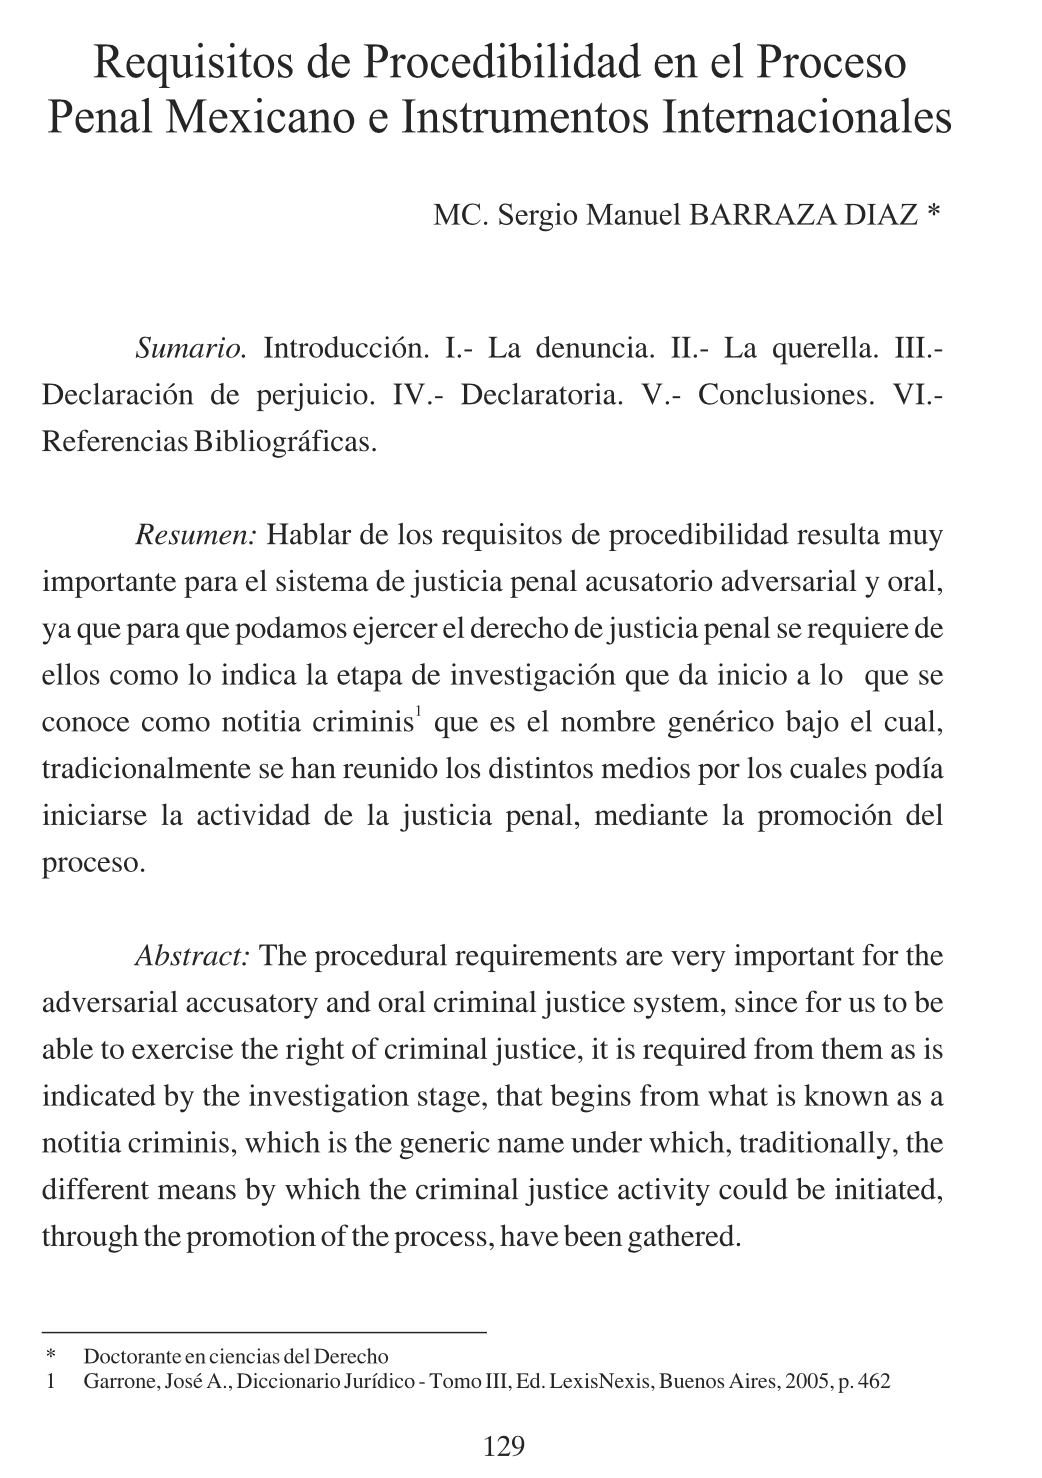 Requisitos de Procedibilidad en el Proceso Penal Mexicano e Instrumentos Internacionales